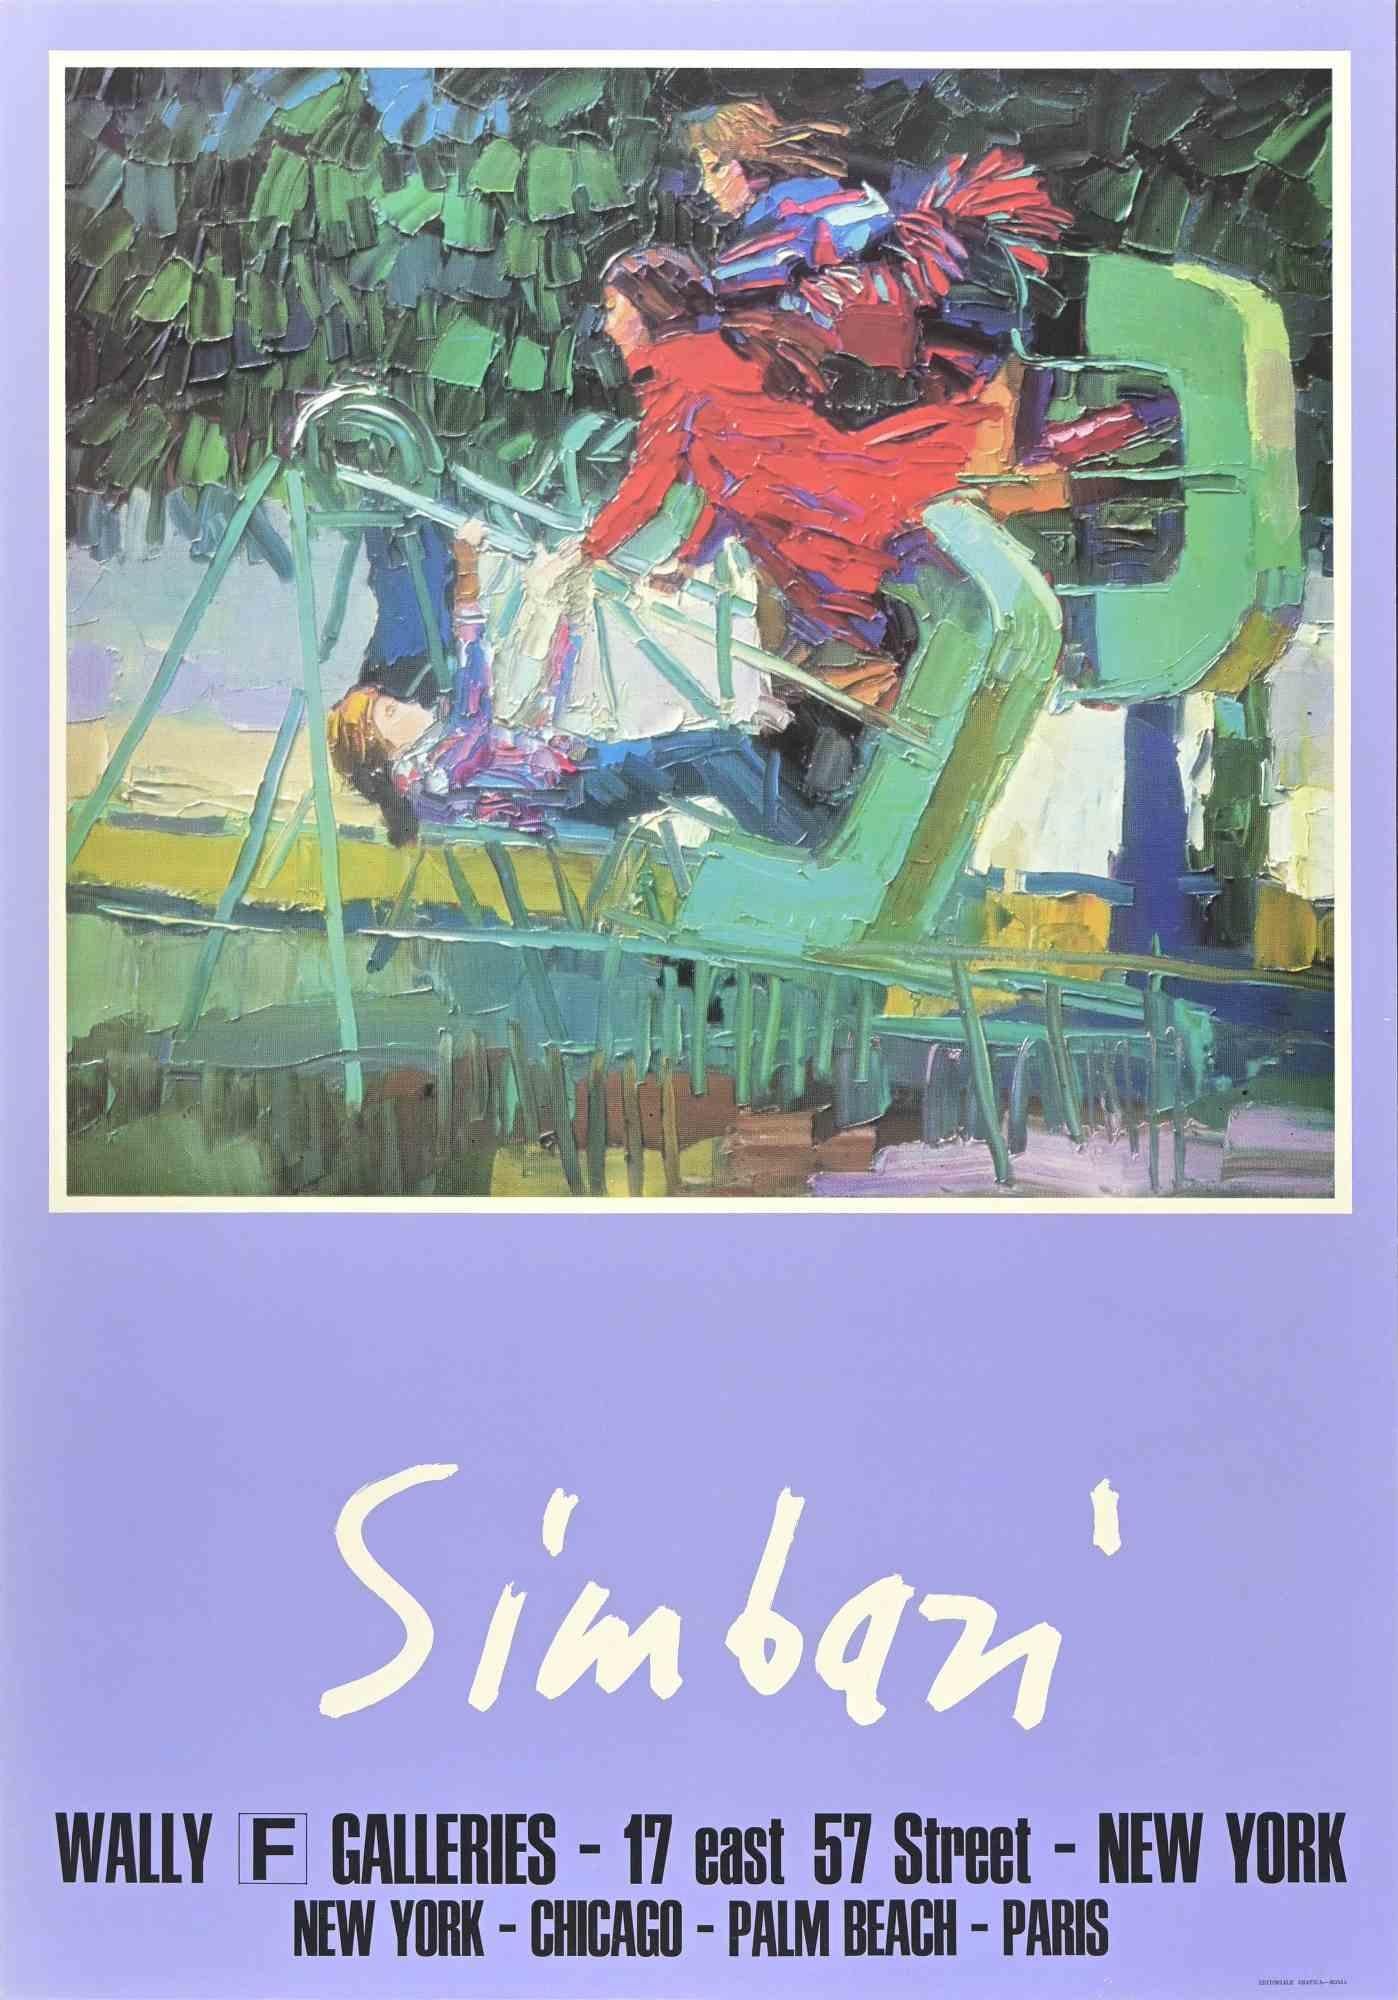  Vintage Poster after Simbari - New York - Original Offset - 1970s